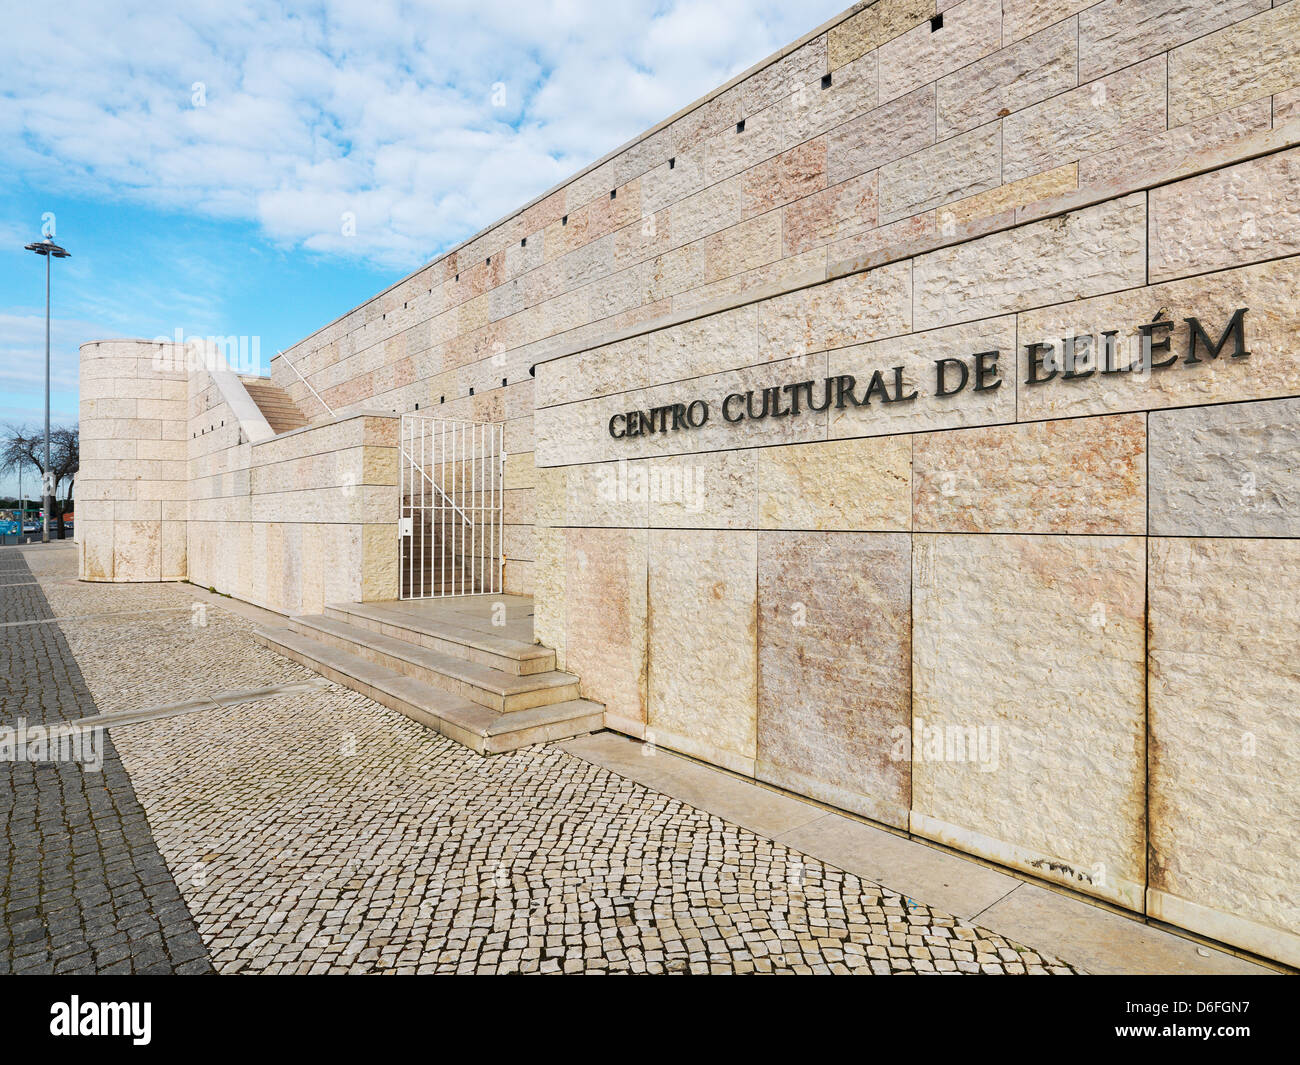 Lisbon, Portugal, Centro Cultural de Belem Stock Photo